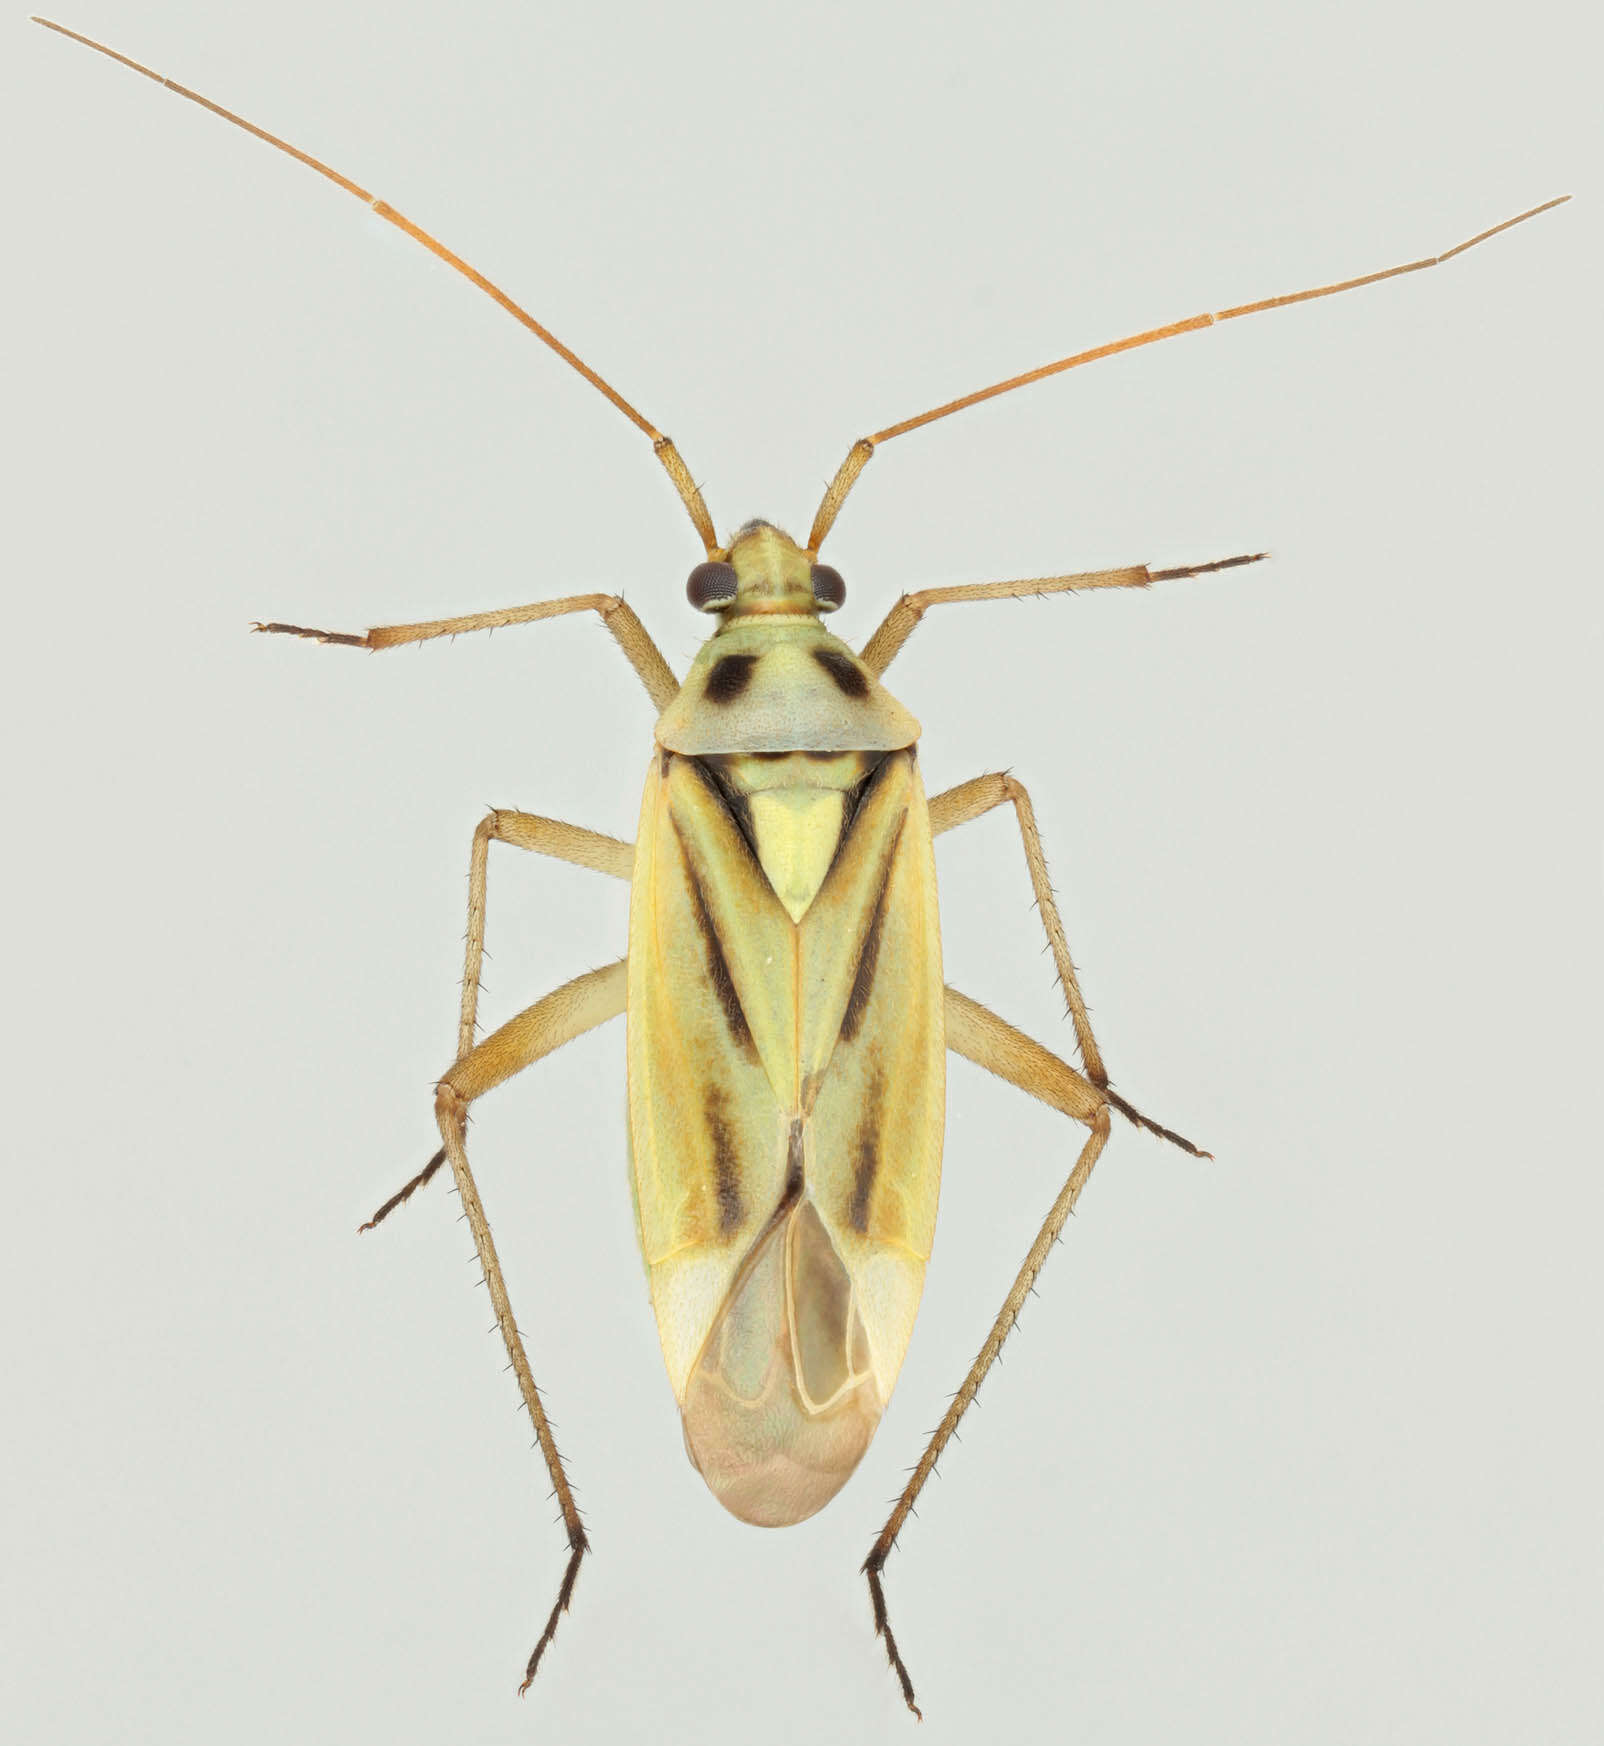 Image de Stenotus binotatus (Fabricius 1794)